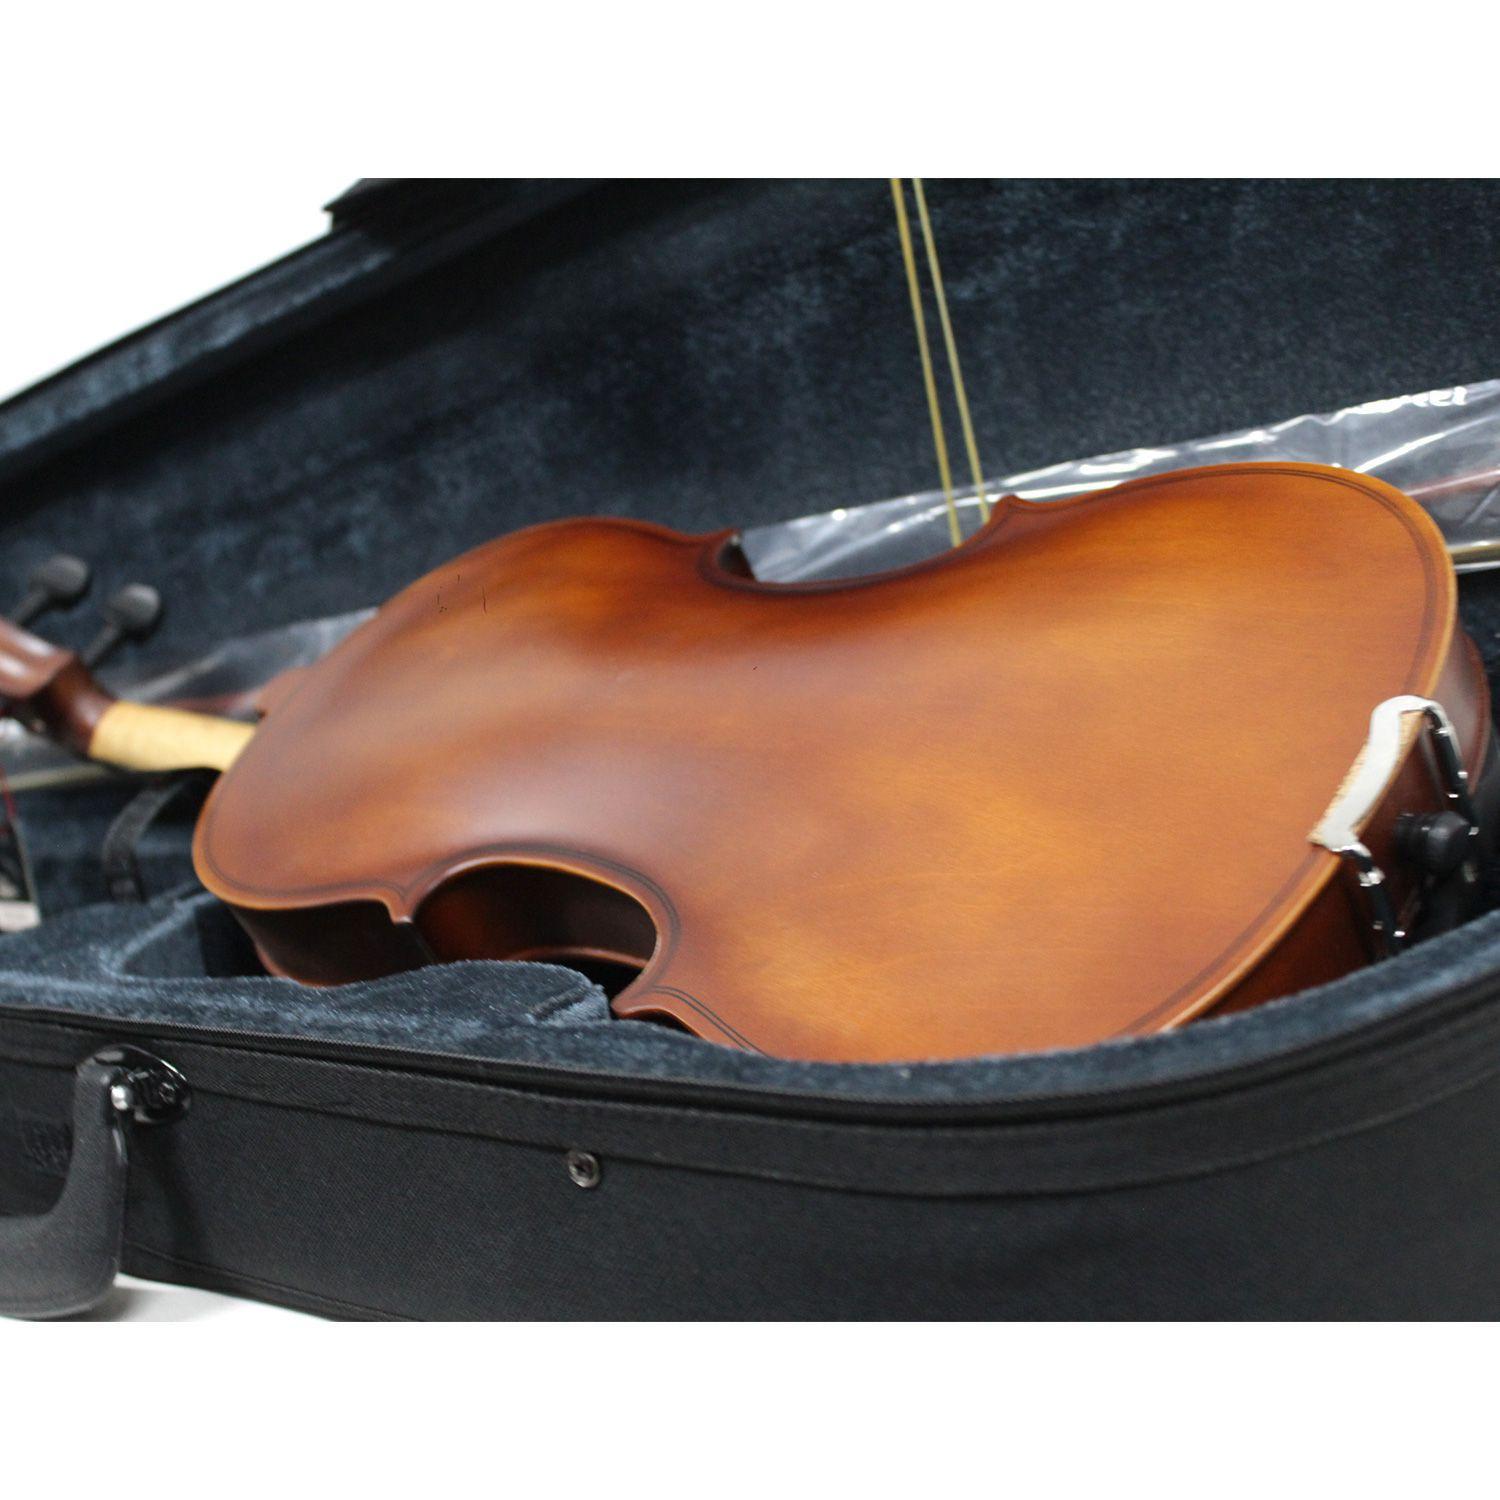 Violino Vivace Mozart  MO44S 4/4 Fosco Com Case Luxo 12302